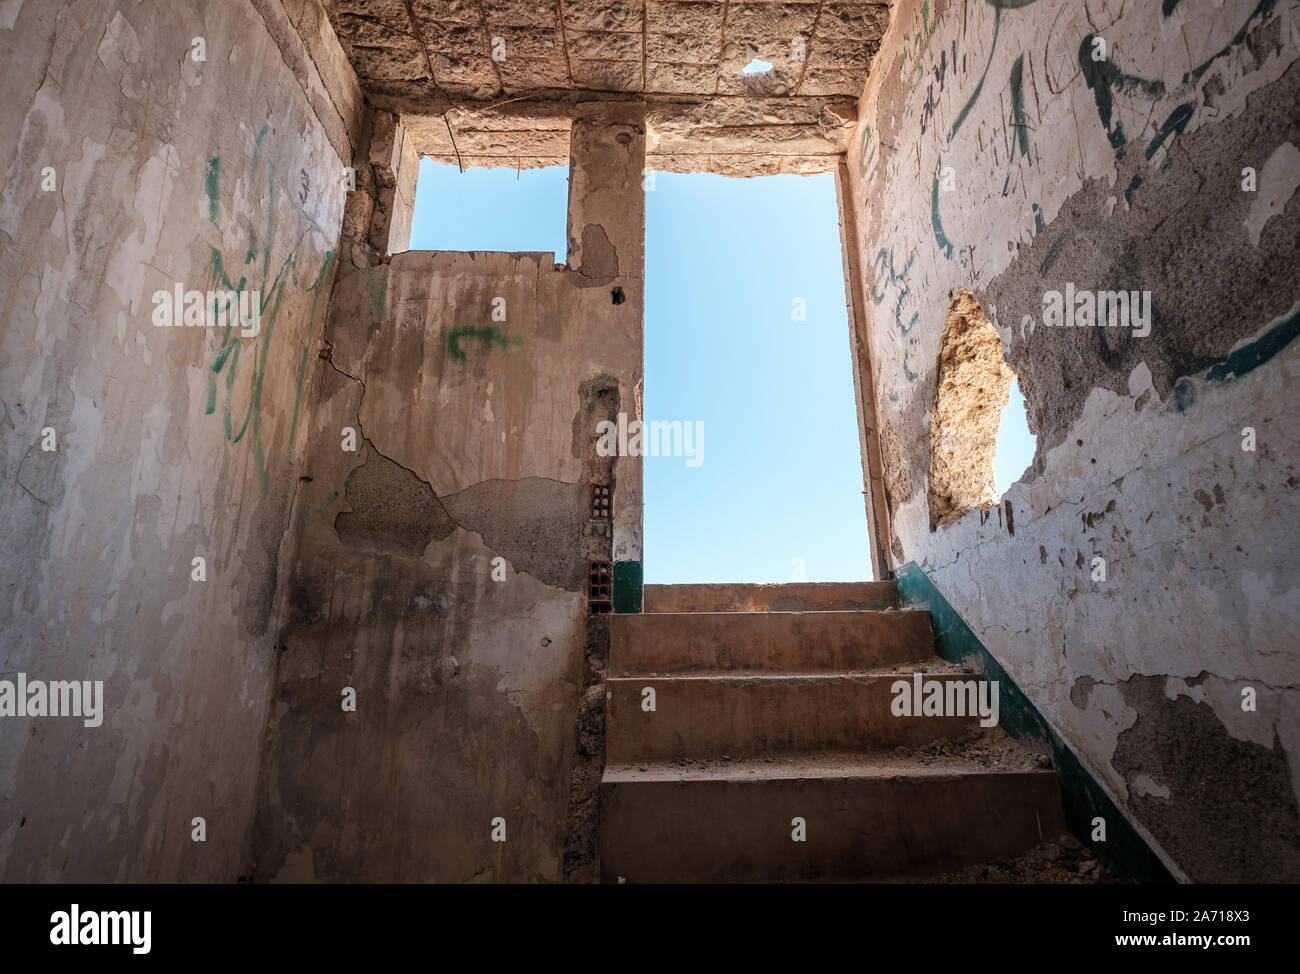 Treppen und Ausfahrt der heruntergekommen Zimmer in verlassenen Gebäude Ruine - Ausweg - Stockfoto